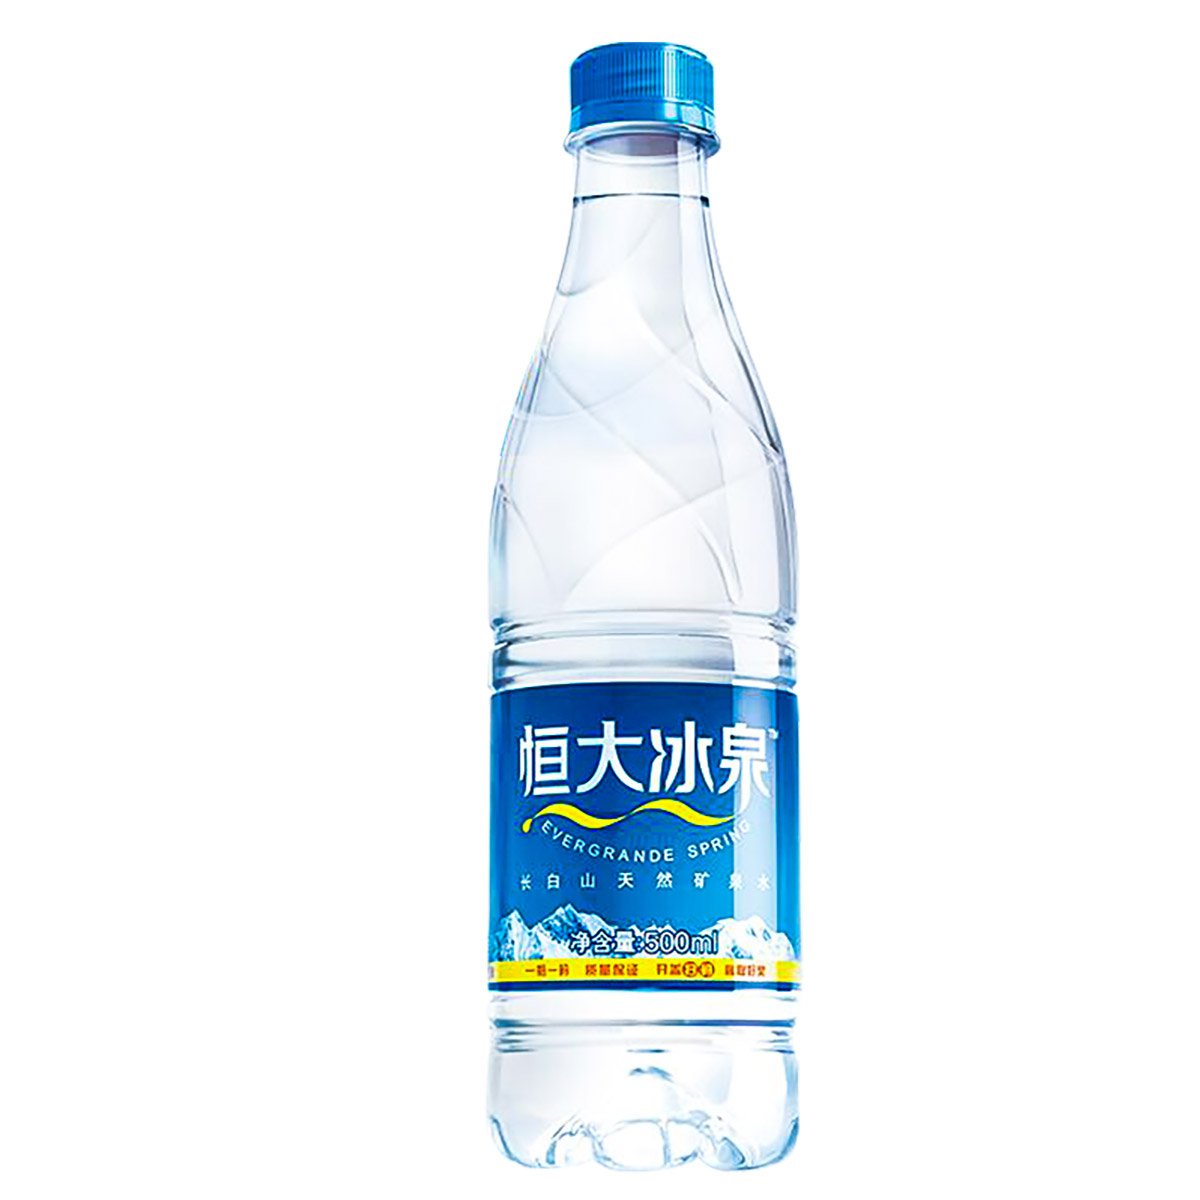 阿波卡天然高端矿泉水瓶型标签包装设计-酒水饮料包装设计观闻-西安设计公司